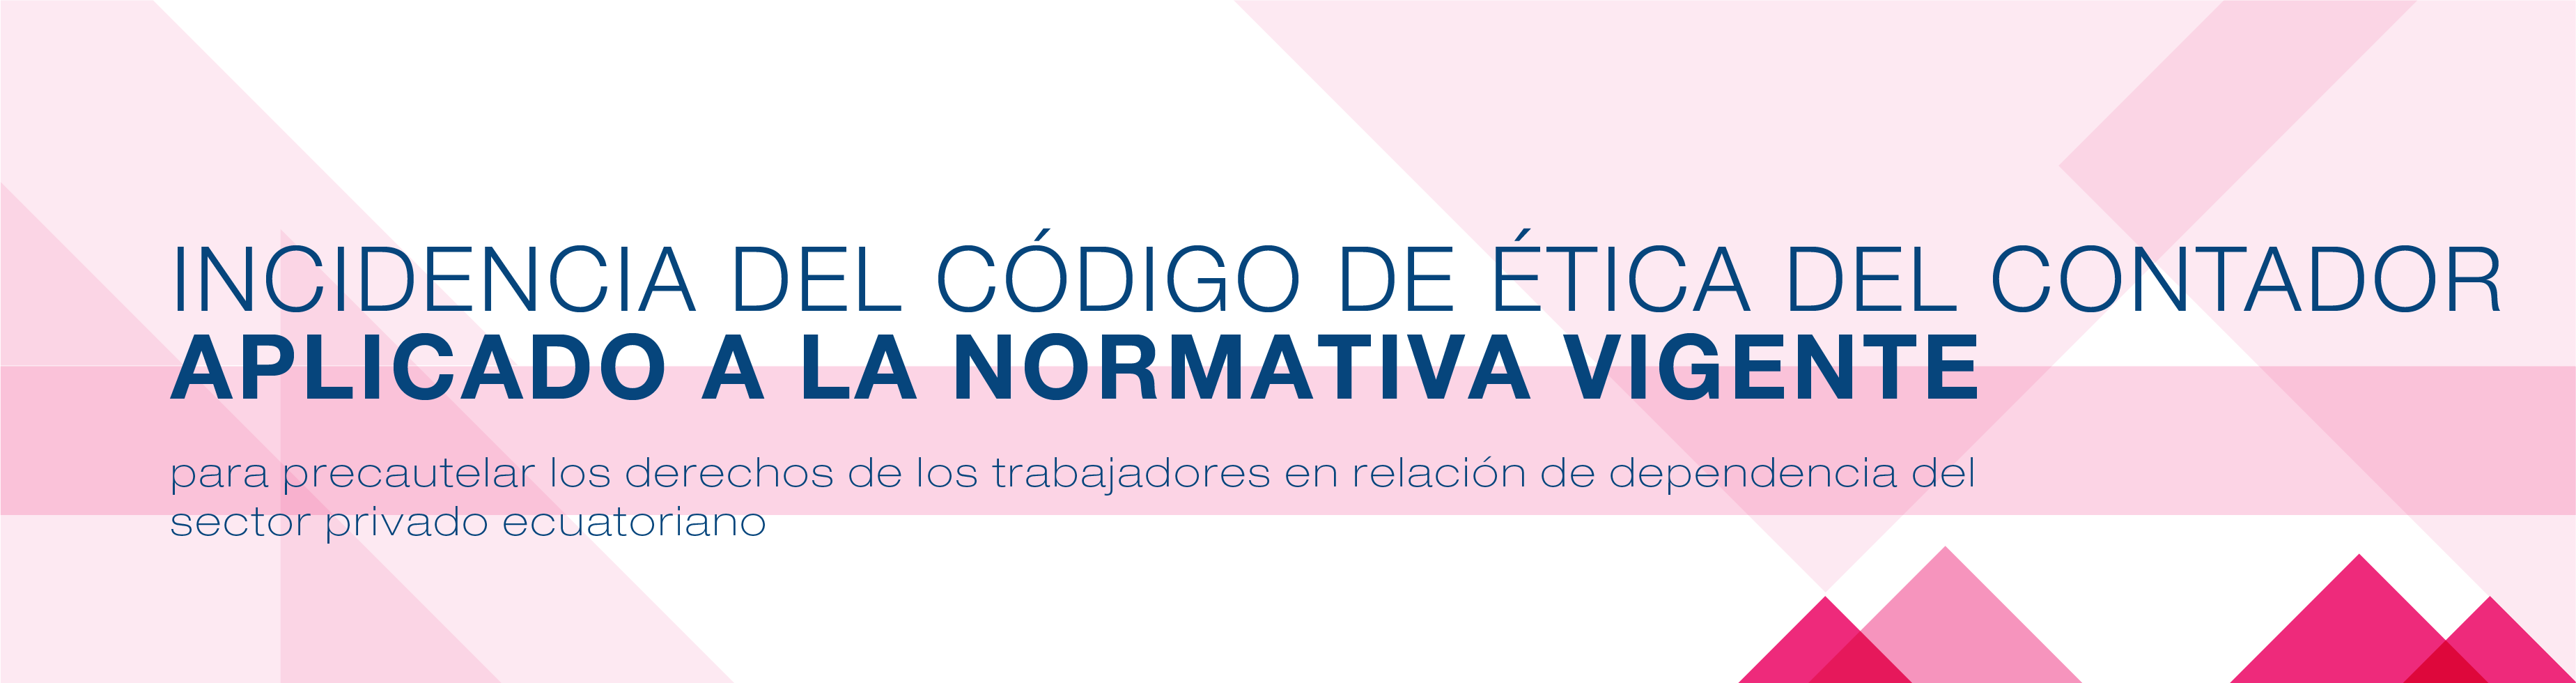 Incidencia del Código de Ética del Contador aplicado a la normativa vigente para precautelar los derechos de los trabajadores en relación de dependencia del sector privado ecuatoriano